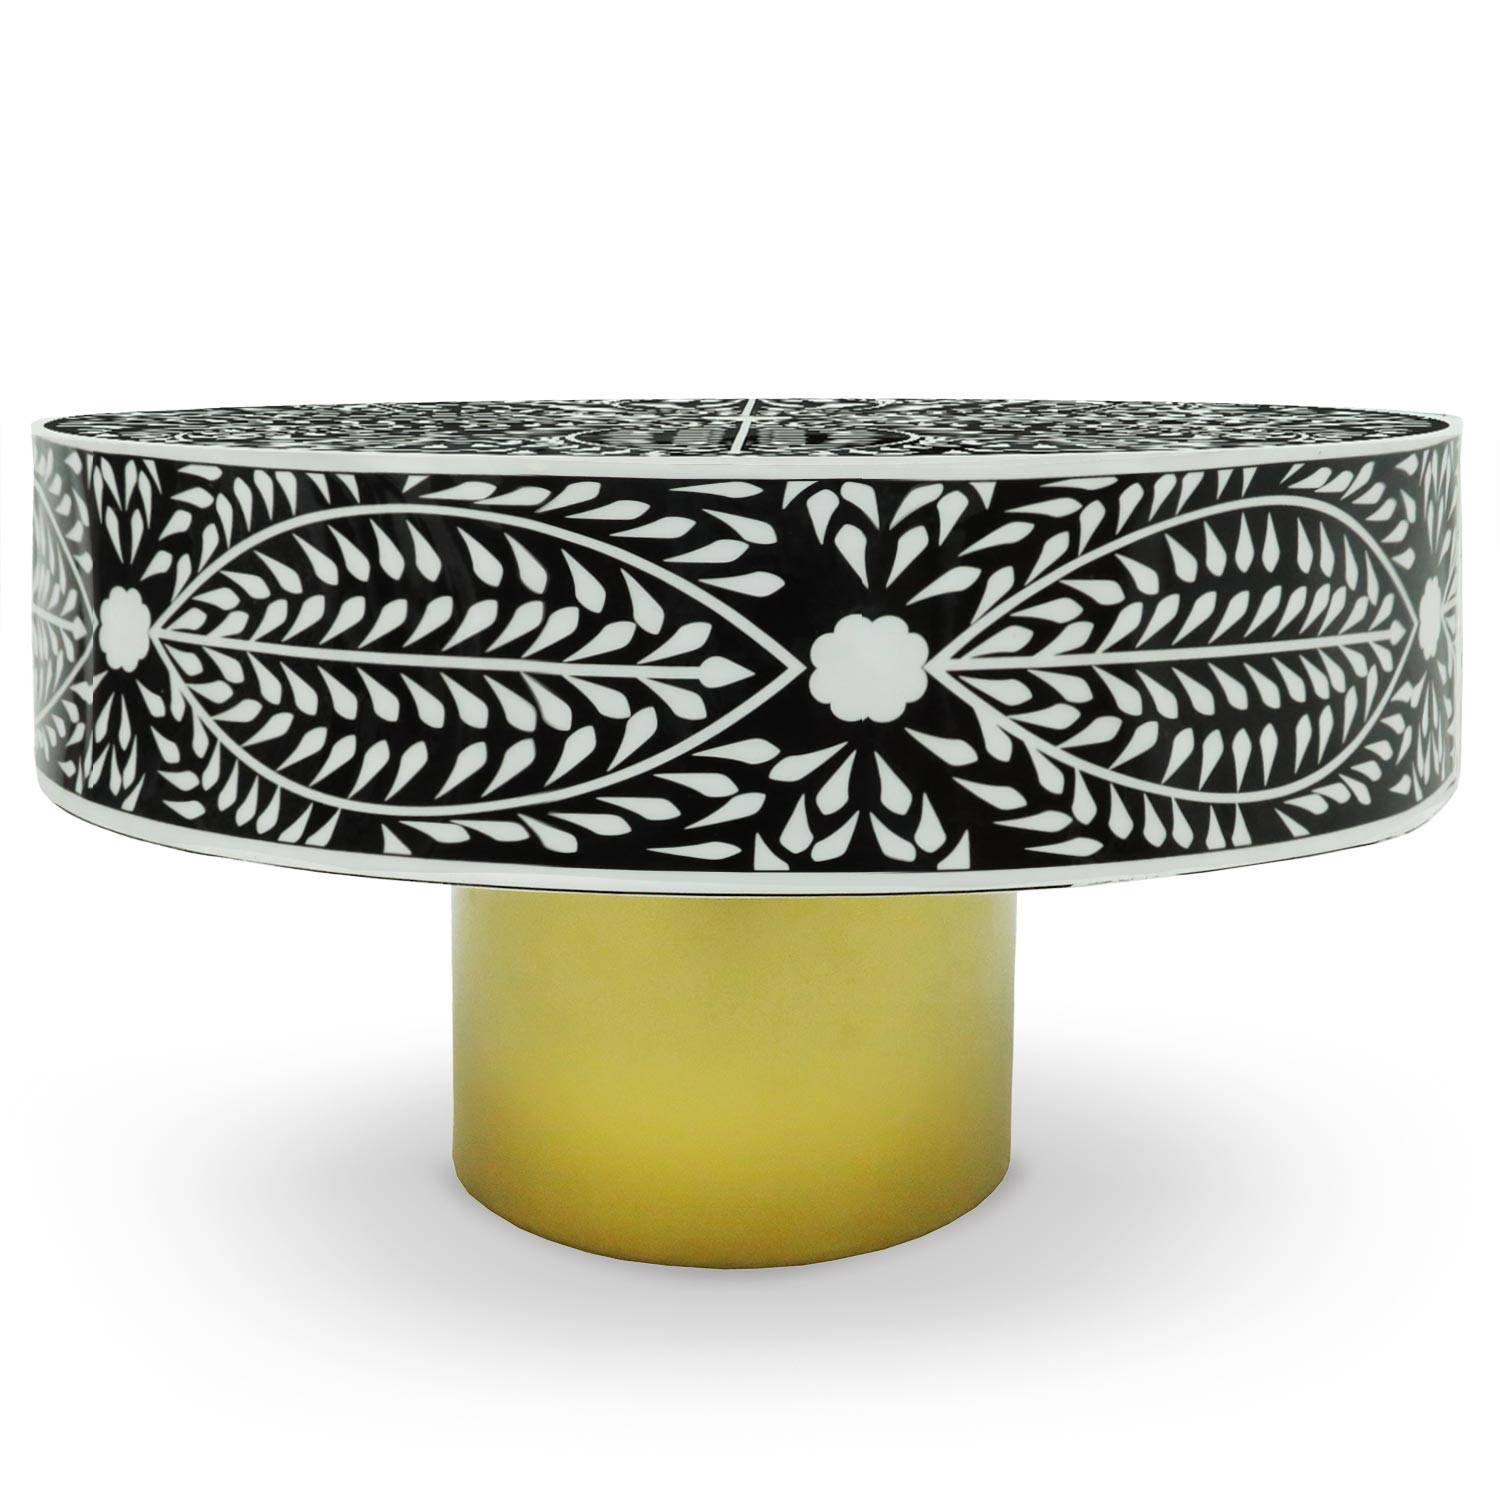 Mesa de centro redonda de estilo arty Ø71cm Viliana Motivo floral blanco y negro y base dorada